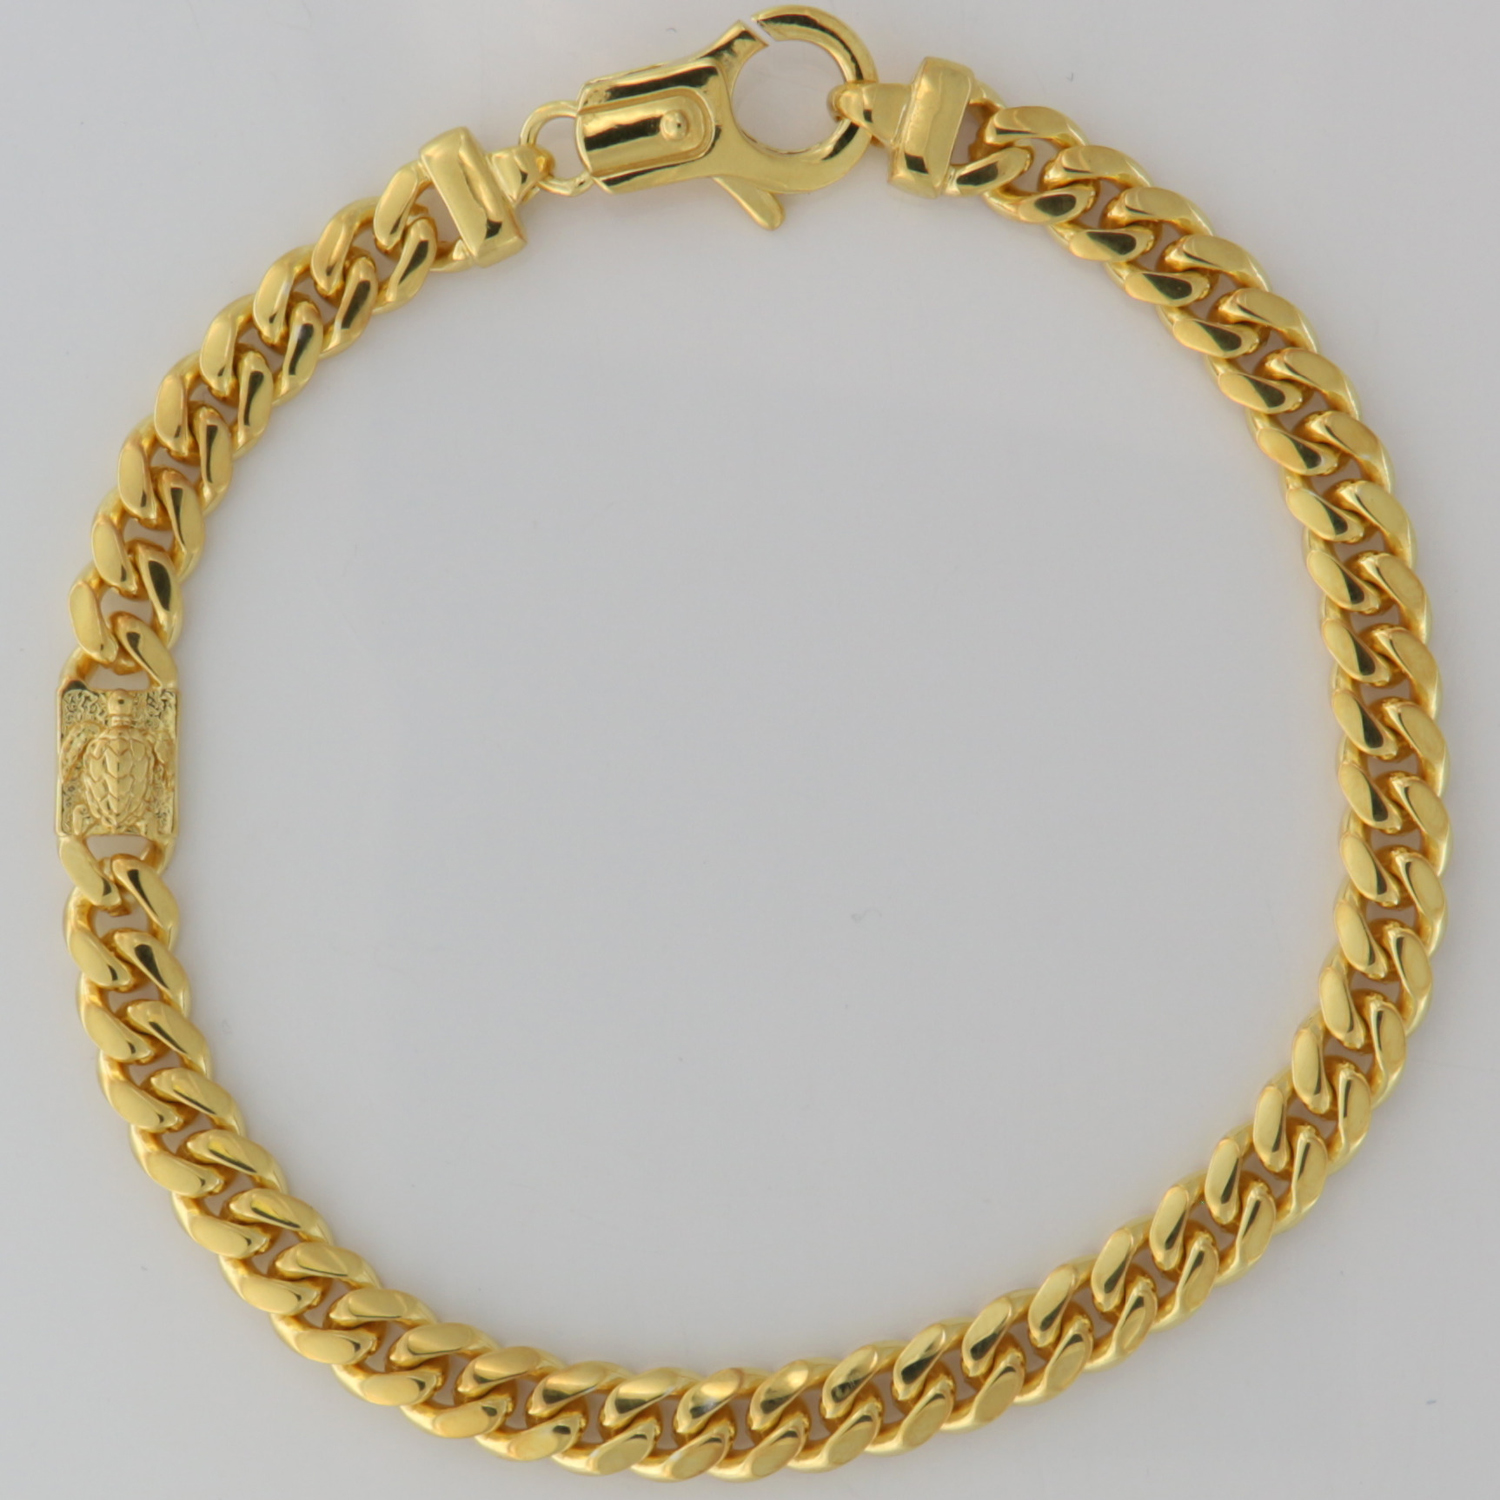 Bracelet men's 1 turtle element gold plated-image